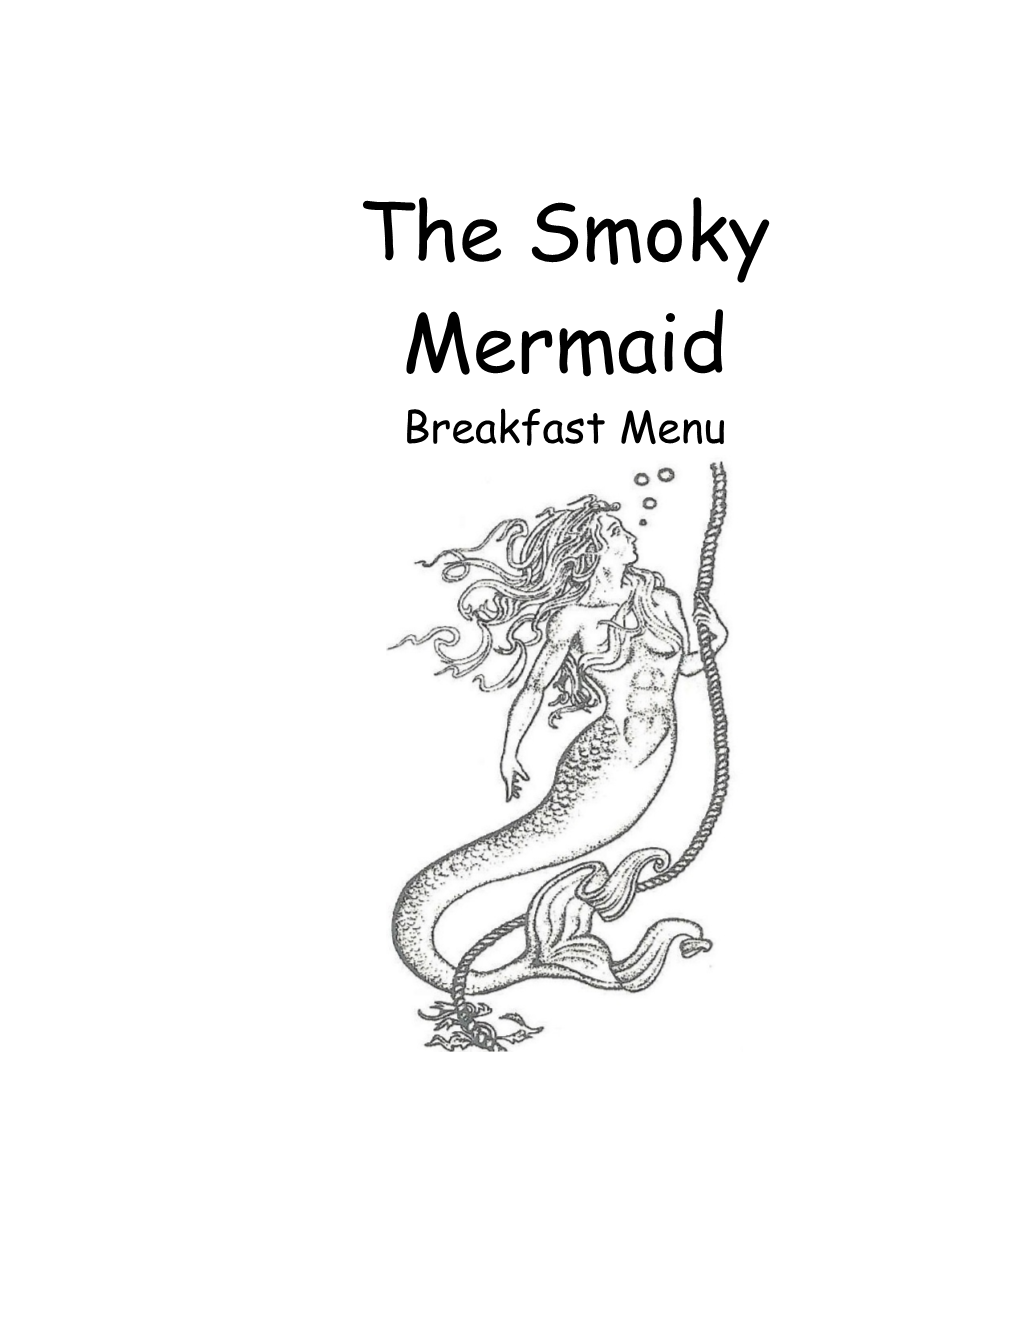 The Smoky Mermaid